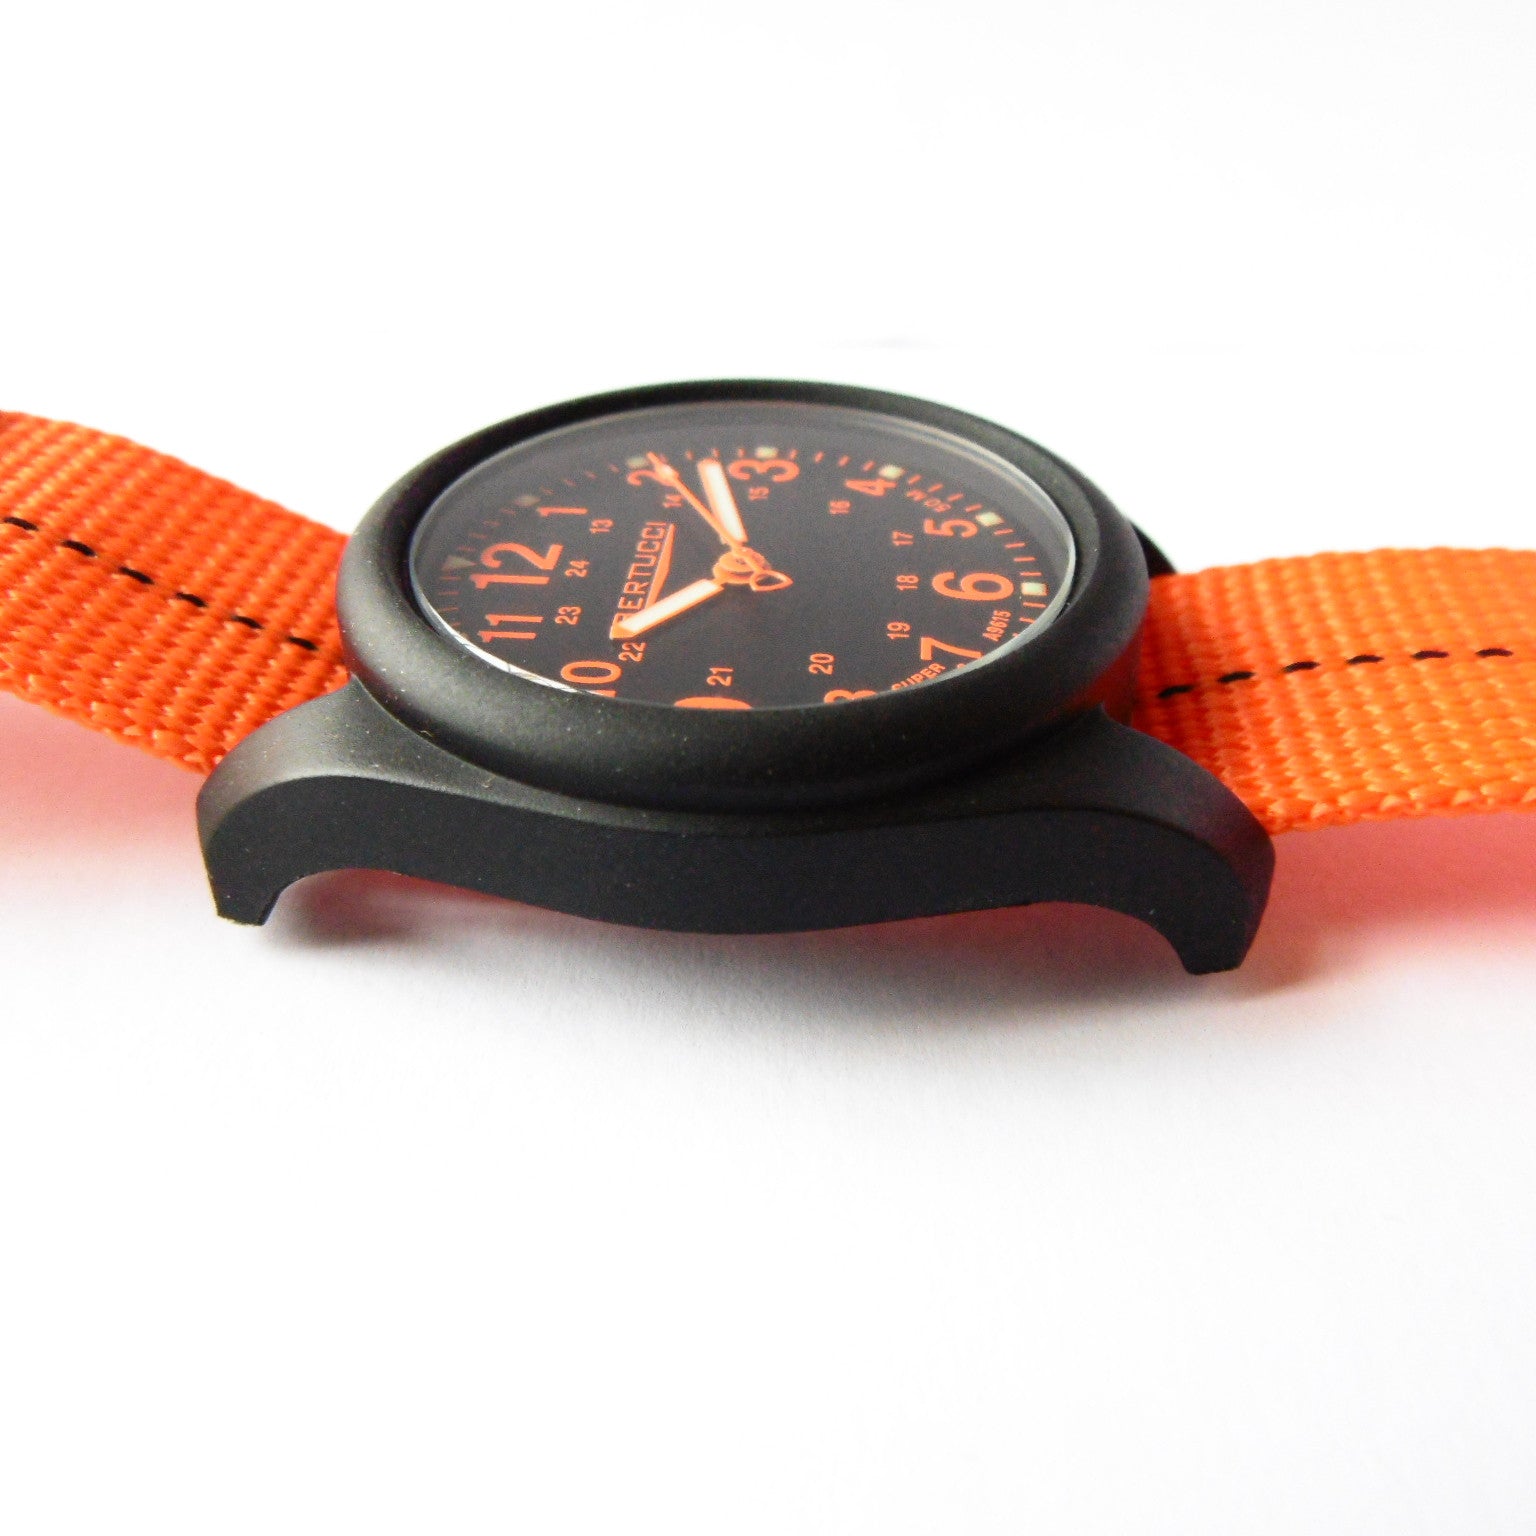 Bertucci DX3 Plus Field Resin Watch (Dash-Striped Orange Nylon Strap) 11042 - Watchfinder General - UK suppliers of Russian Vostok Parnis Watches MWC G10
 - 4